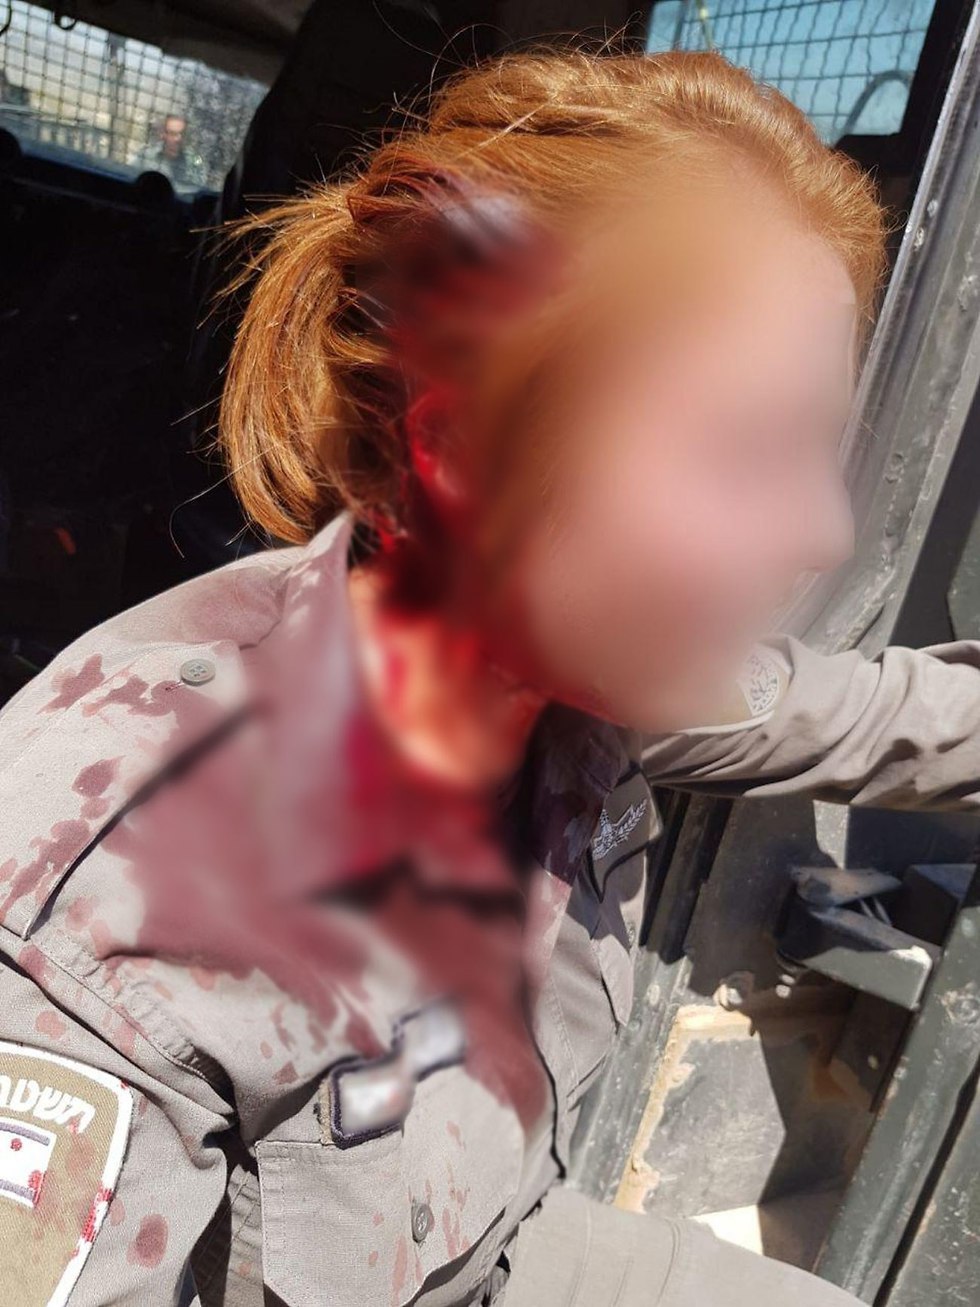 Injured female soldier (Photo: Police Spokesperson)